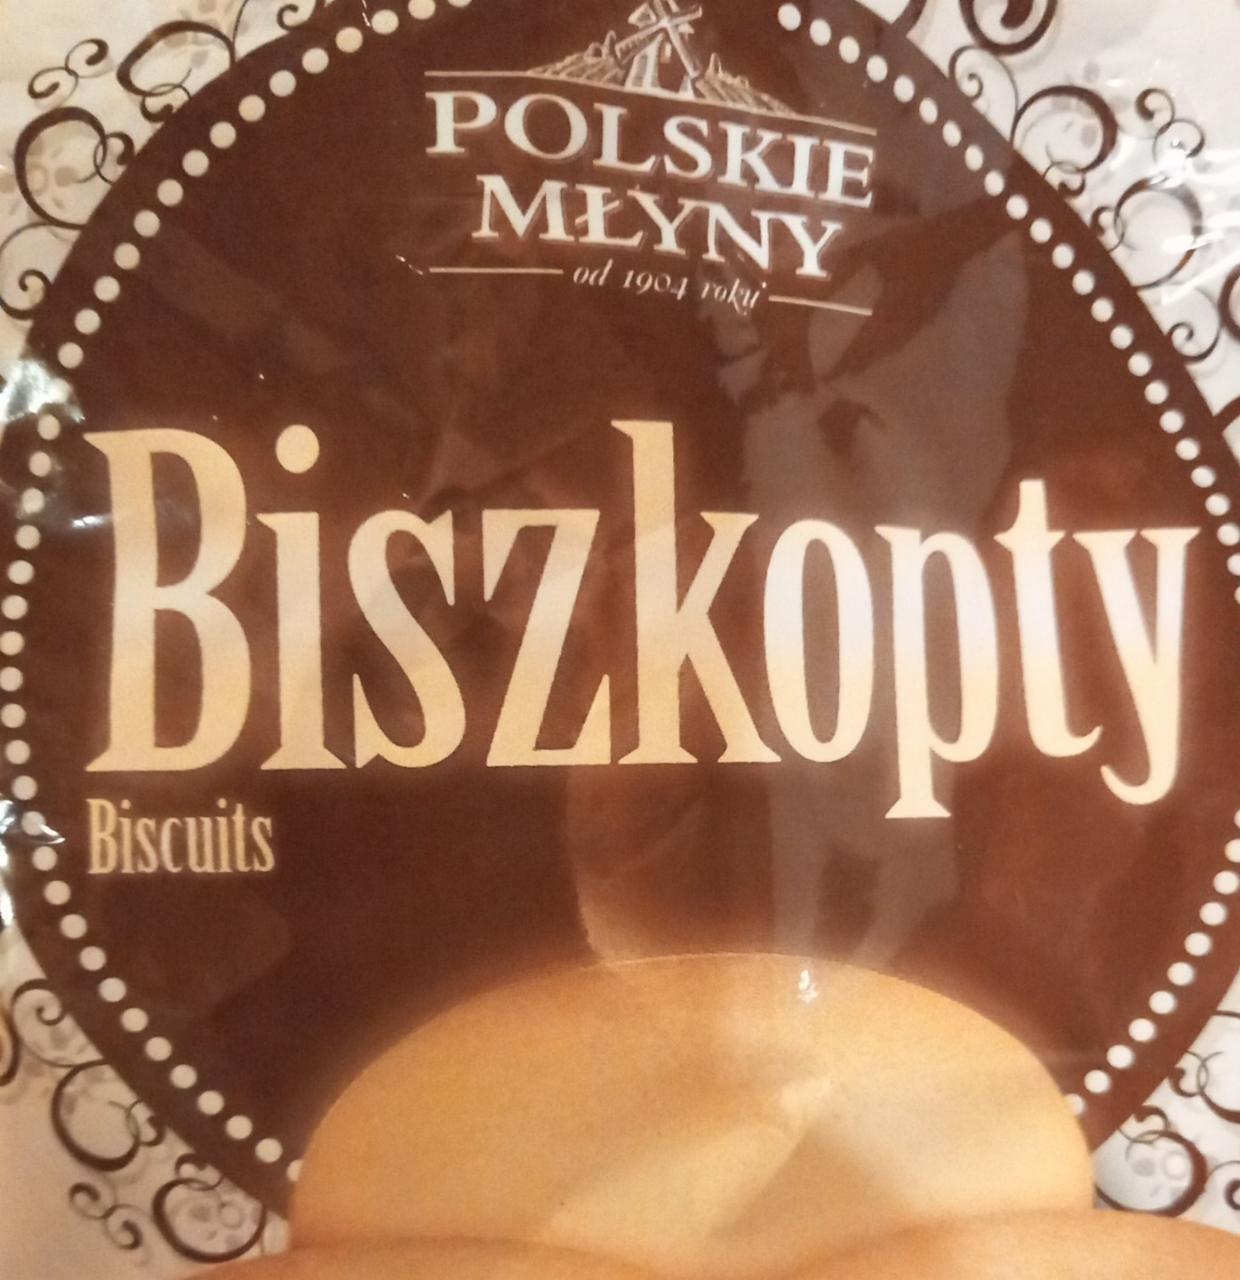 Zdjęcia - Biszkopty Polskie Młyny